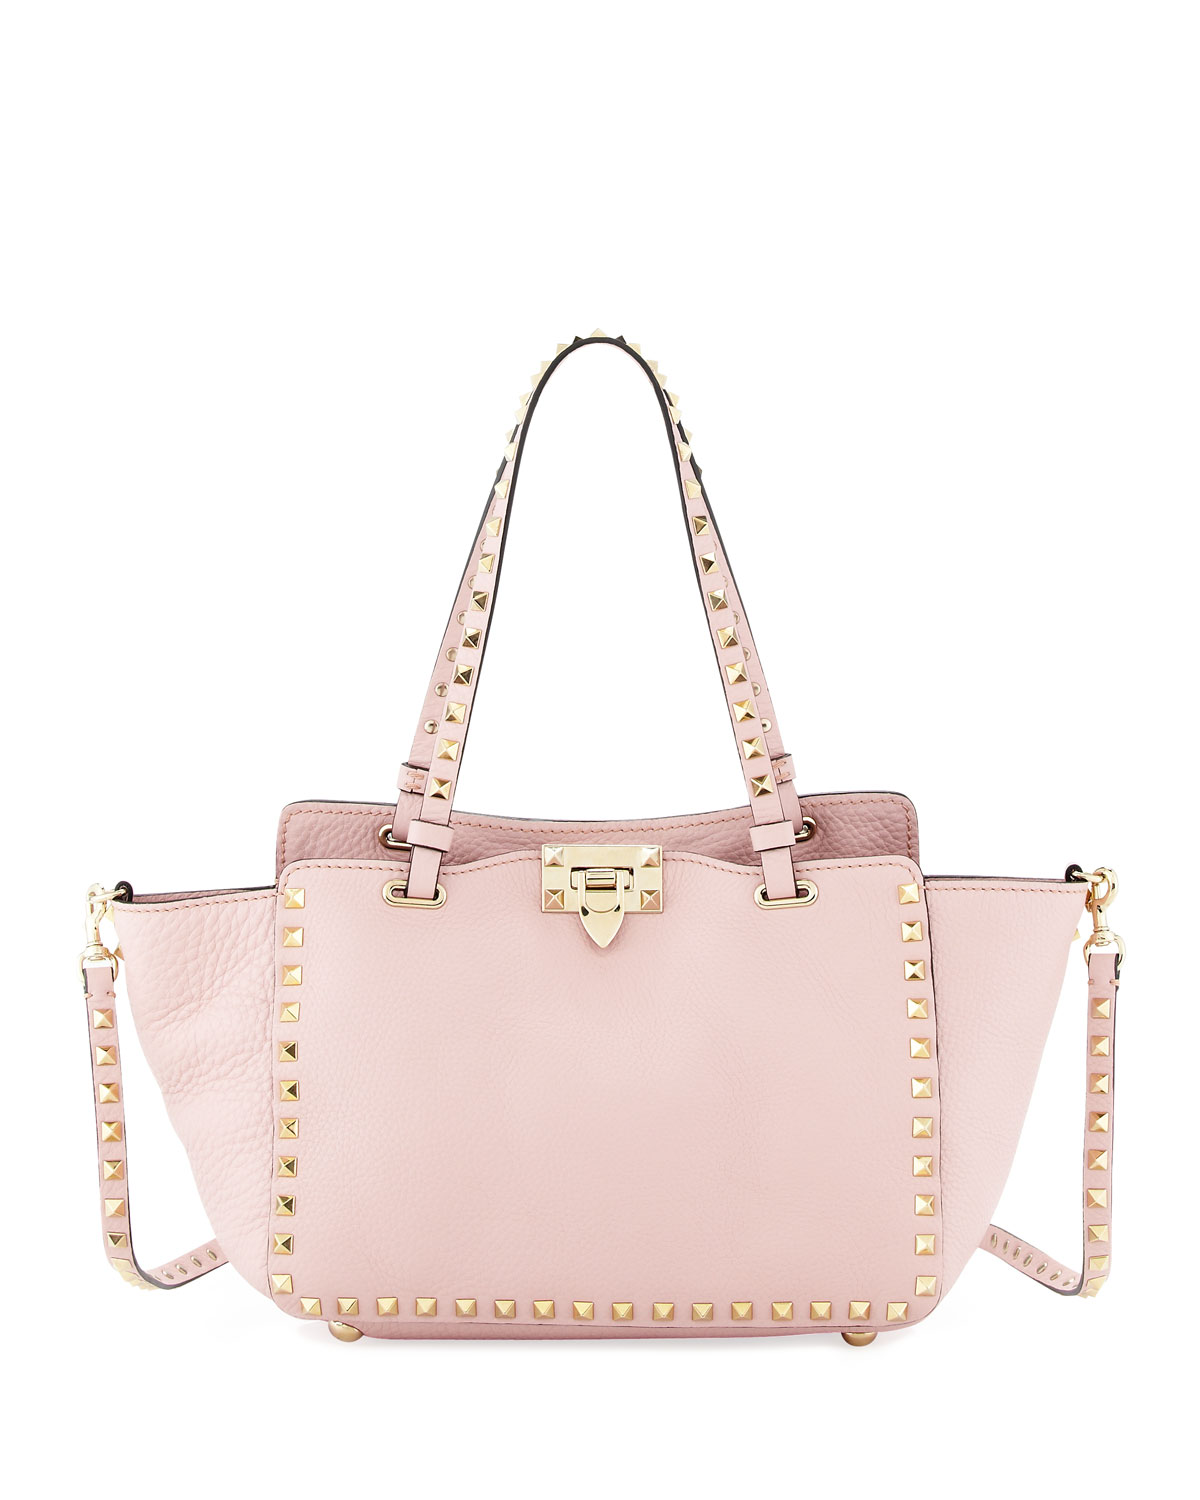 Lyst - Valentino Rockstud Mini Tote Bag Light Pink in Pink